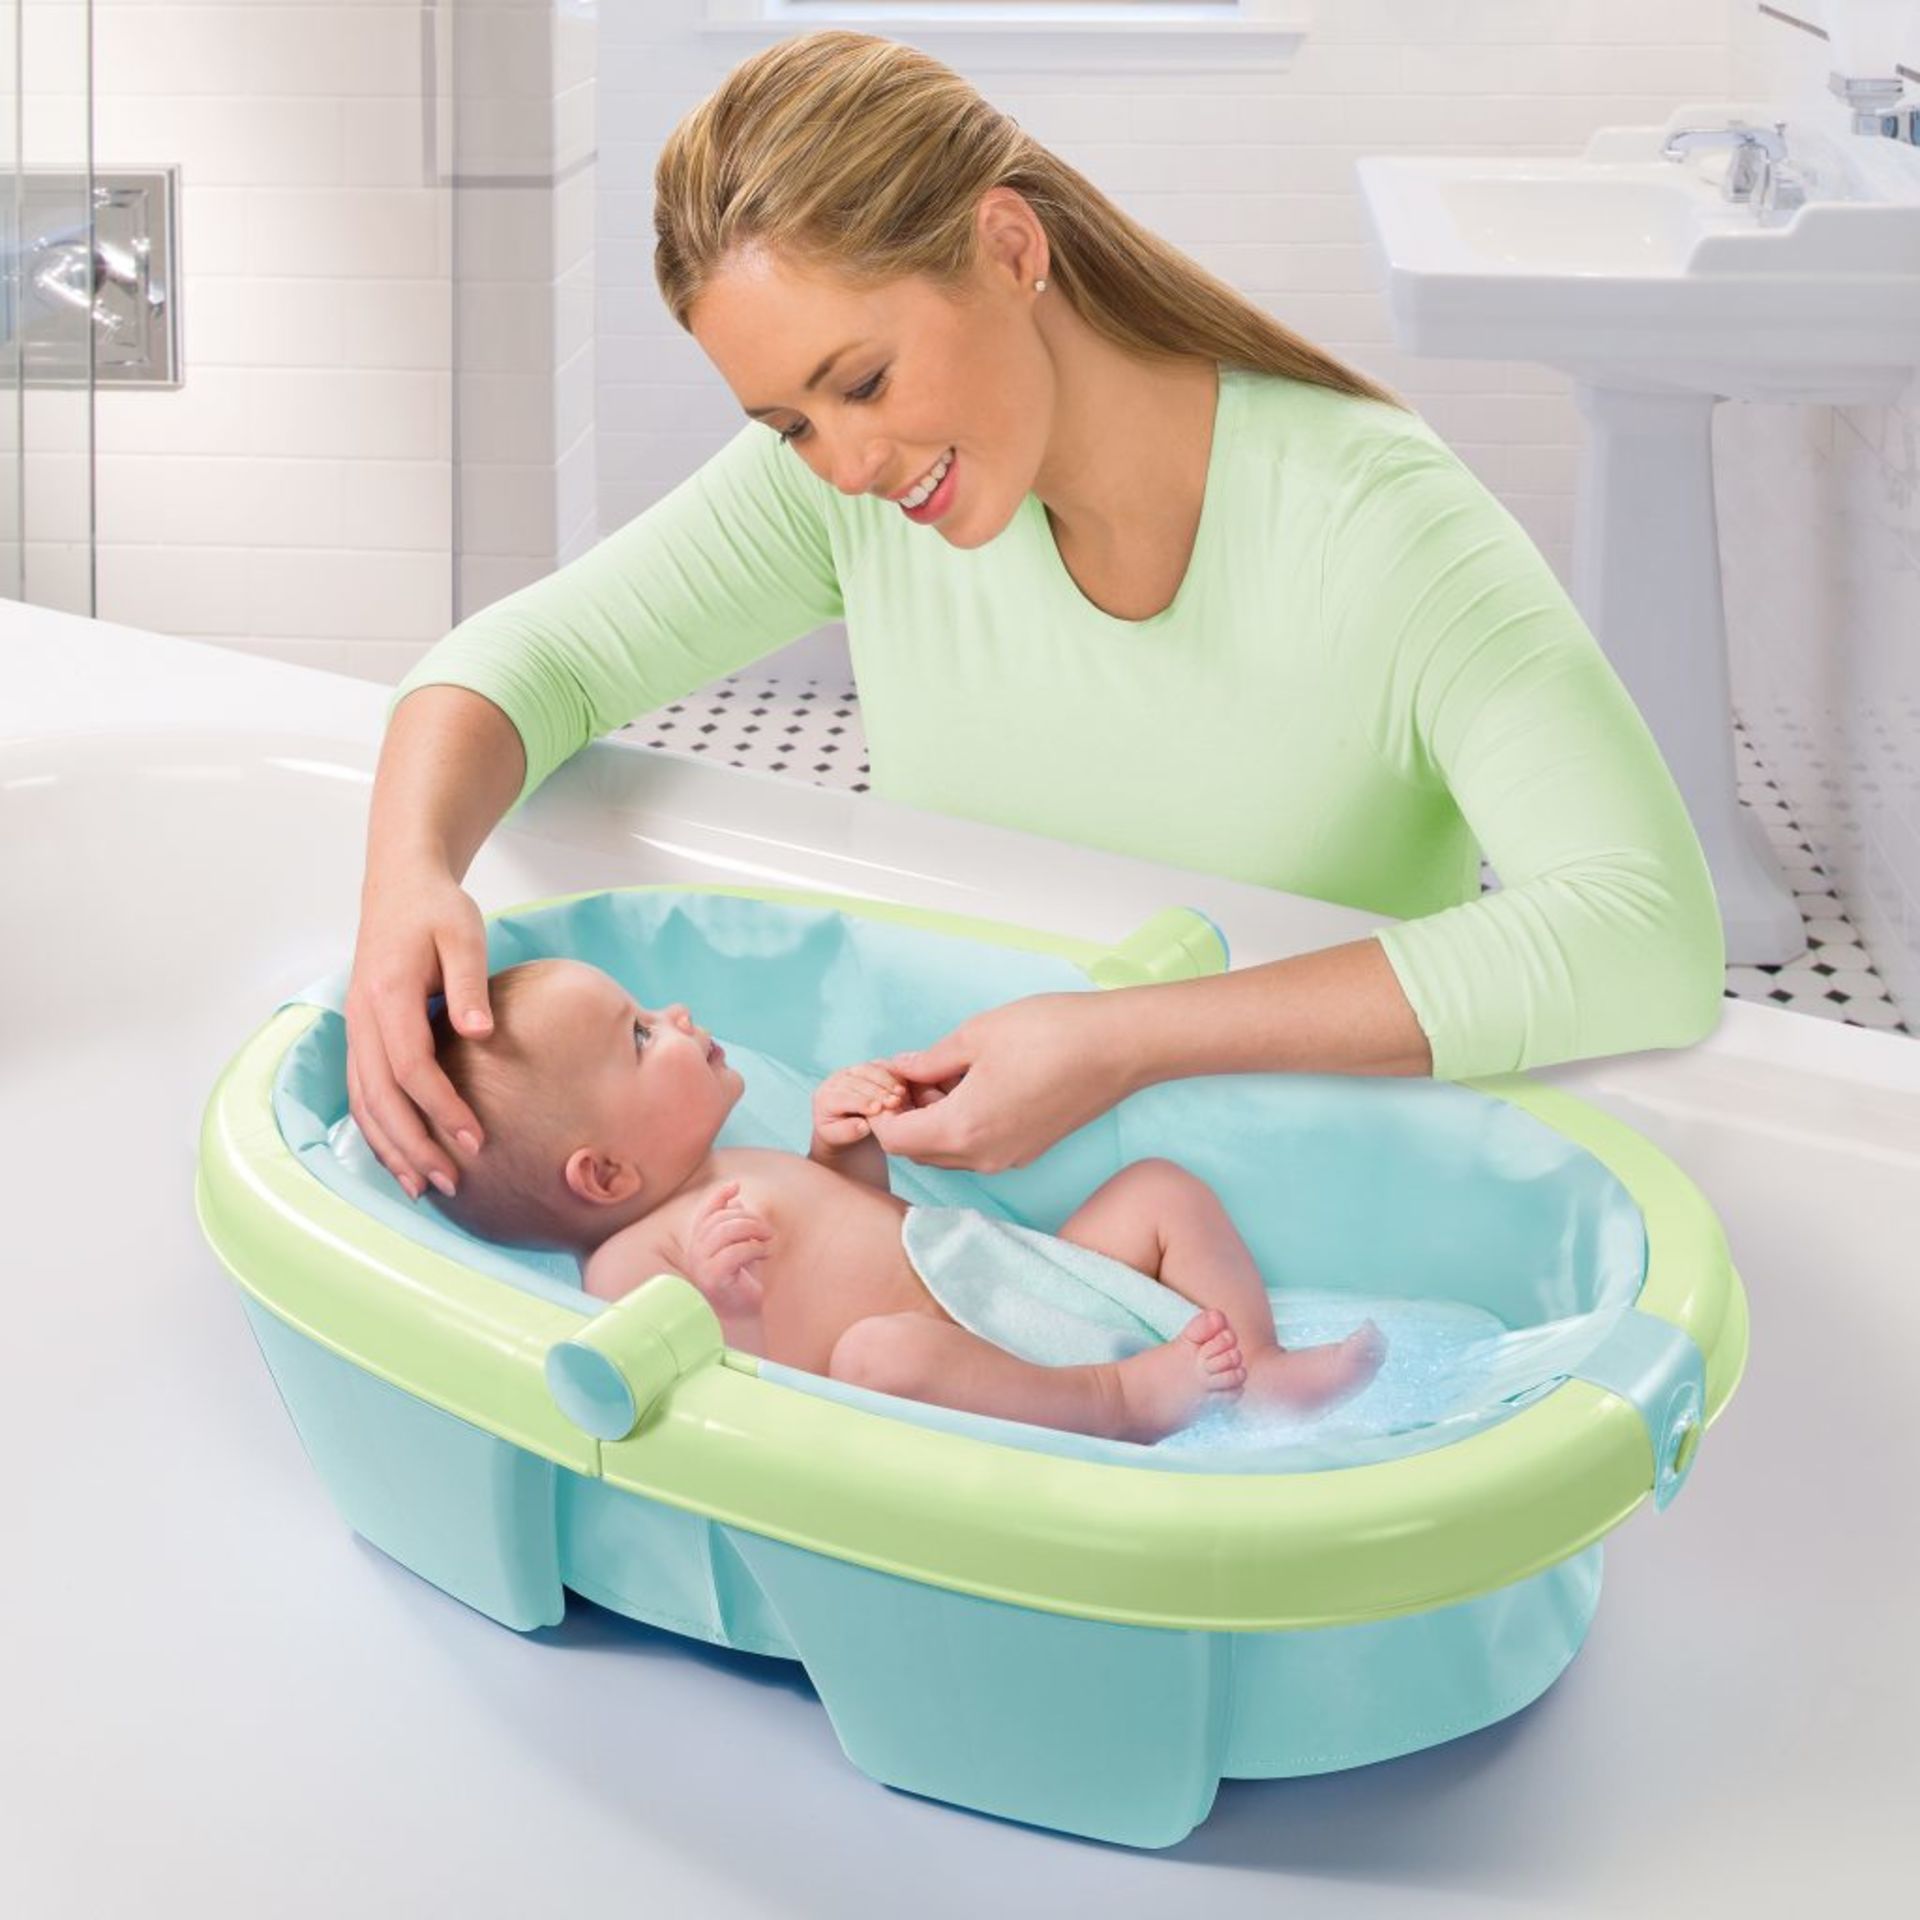 Ванночка для дома. Ванночка Summer Infant складная. Ванночка для новорожденных. Ванночка для купания младенца. Младенец в ванночке.